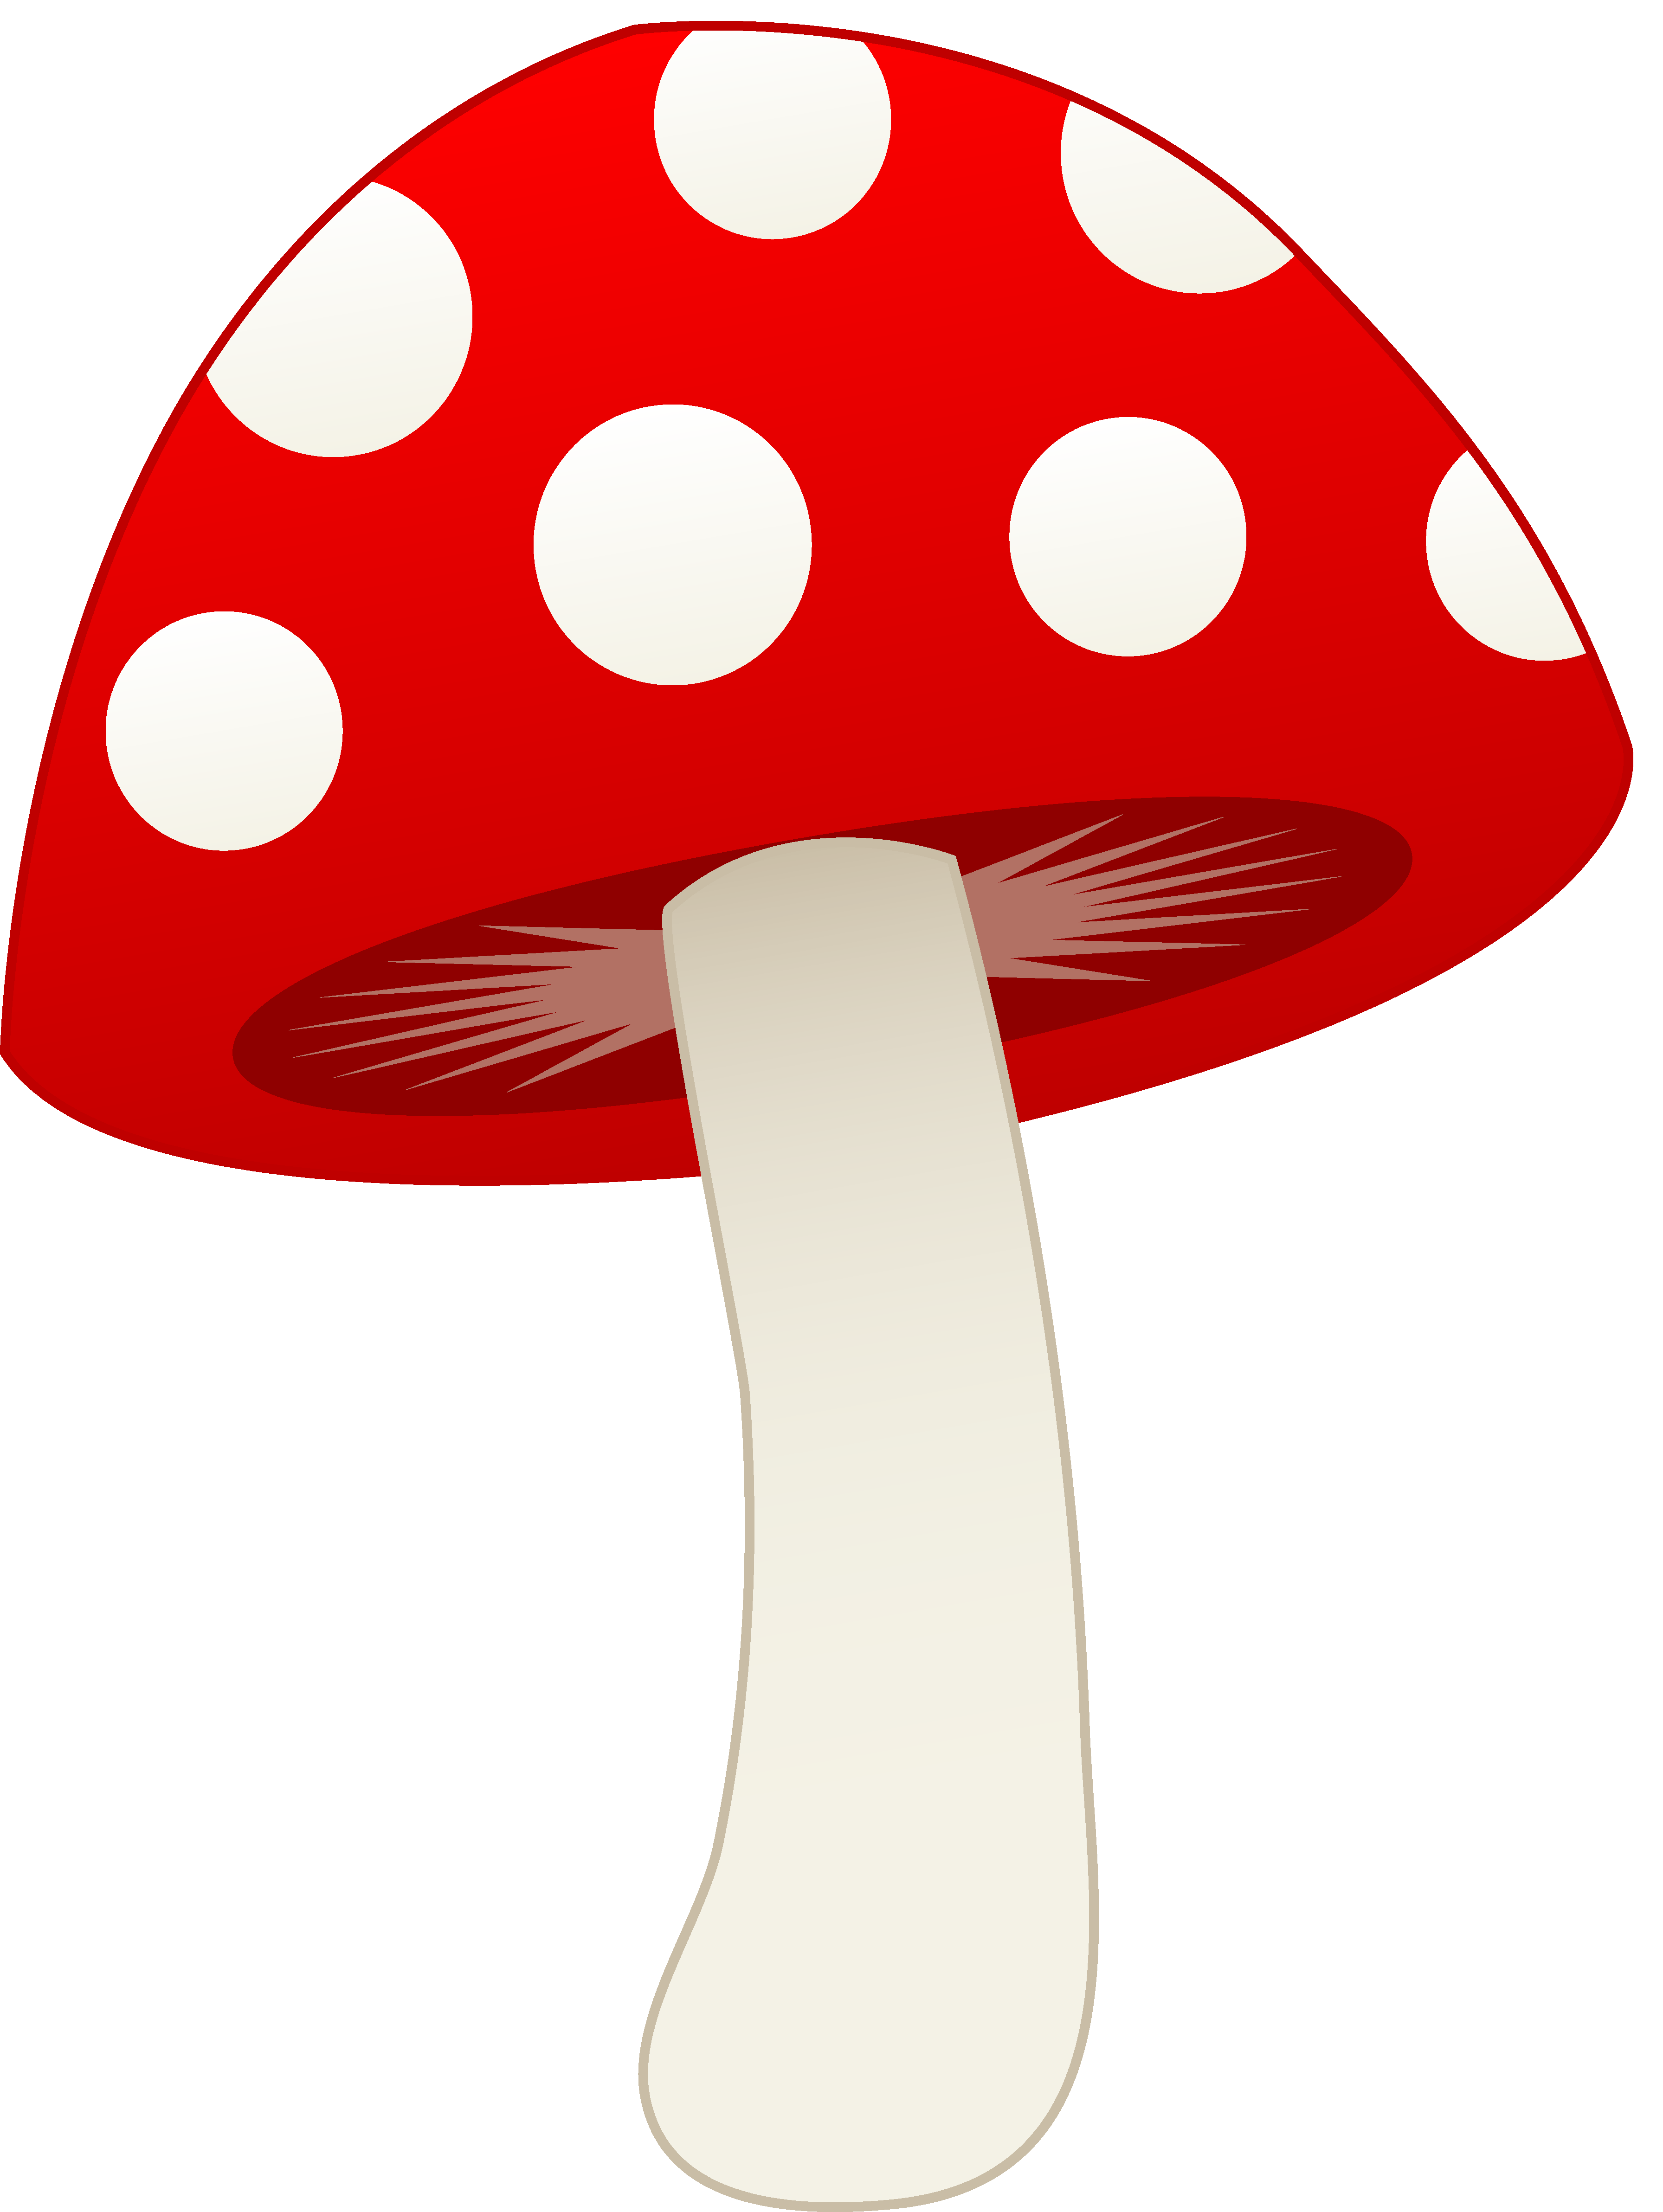 Images For > Cute Mushroom Cartoon